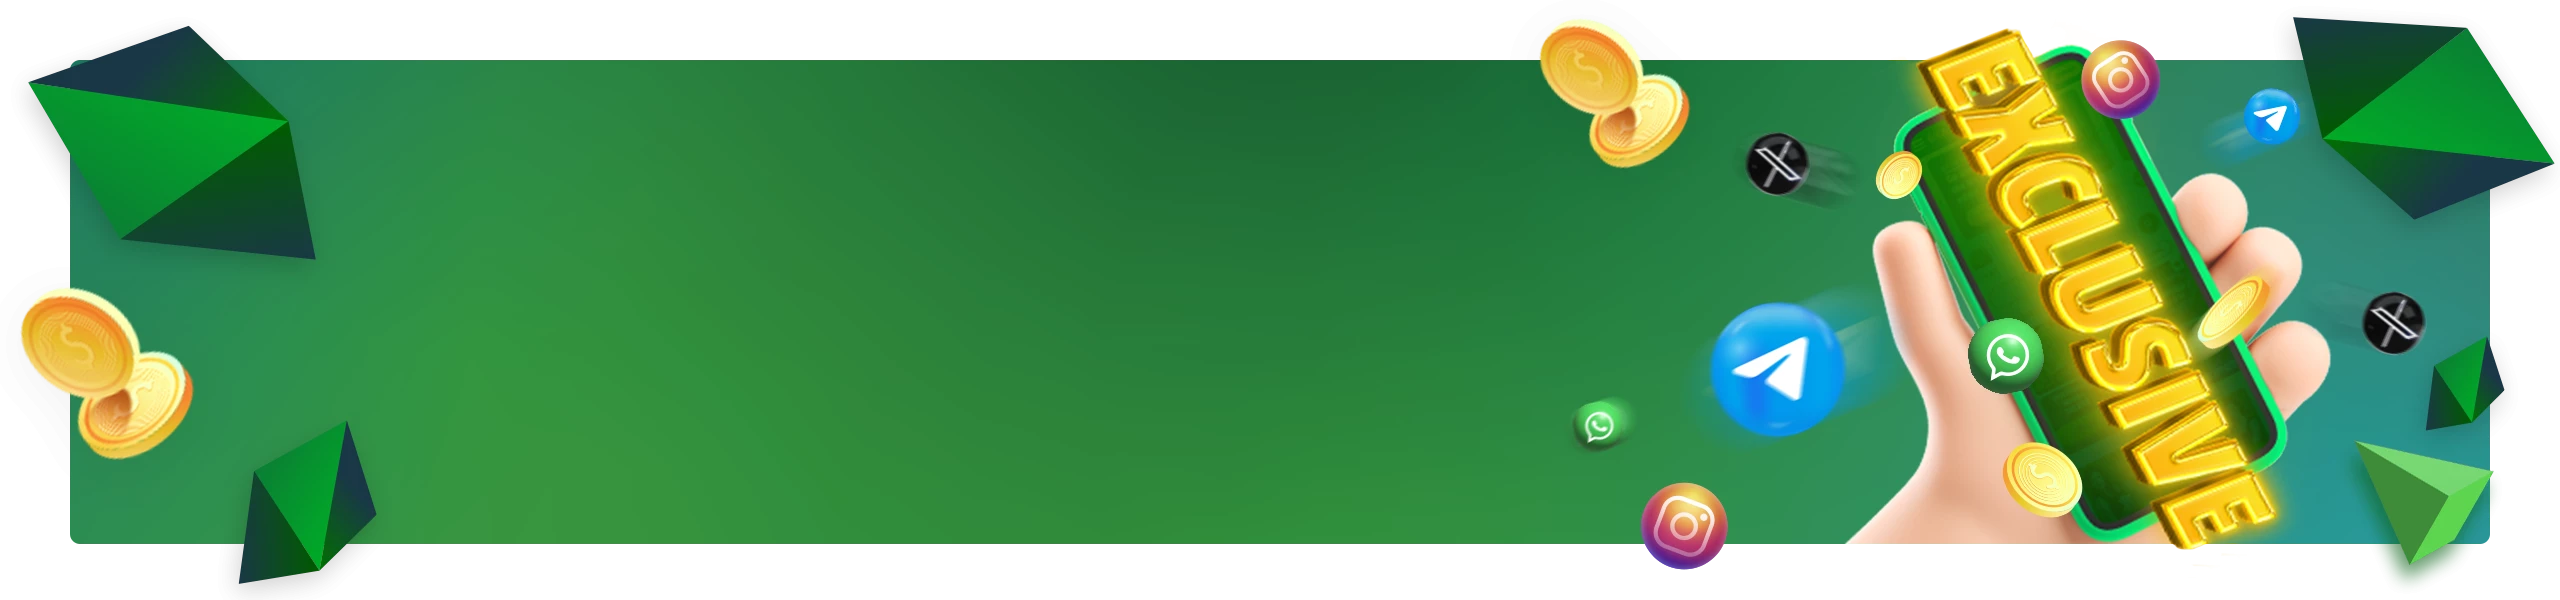 Banner promocional com fundo verde destacando 'Bônus exclusivos', com várias moedas de ouro e ícones de aplicativos caindo ao redor, e um texto 'EXCLUSIVE' em letras douradas, além de um botão amarelo 'Receber'.